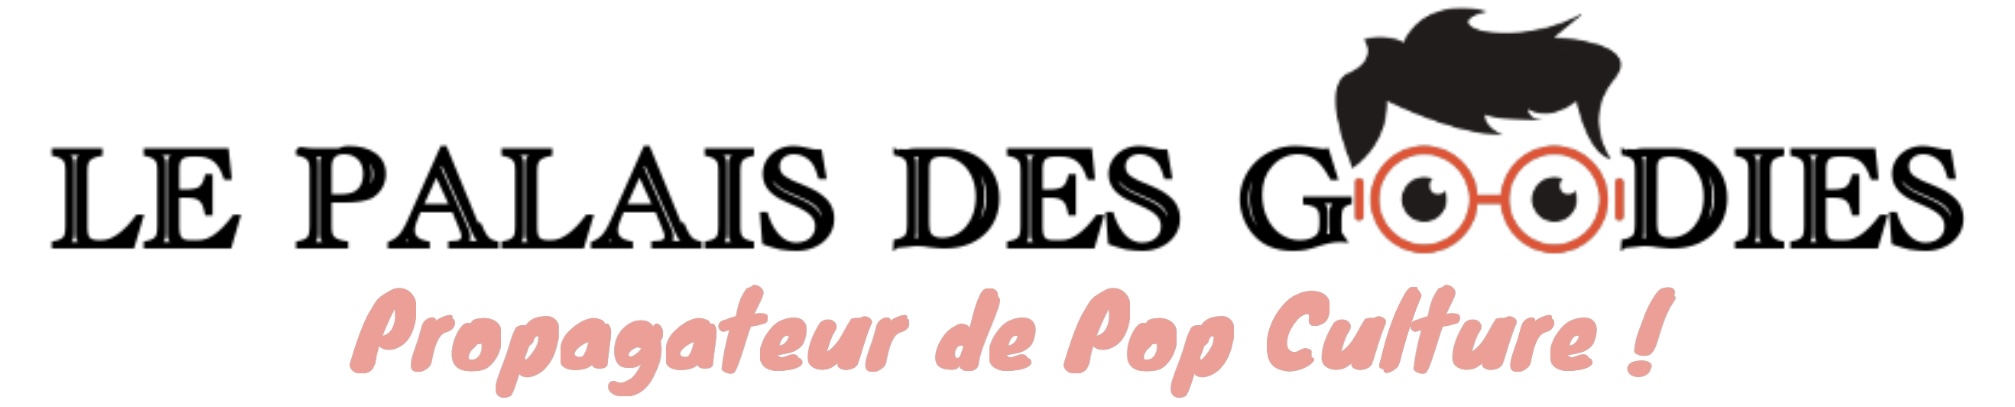 Le Palais des Goodies - Propagateur de pop culture !